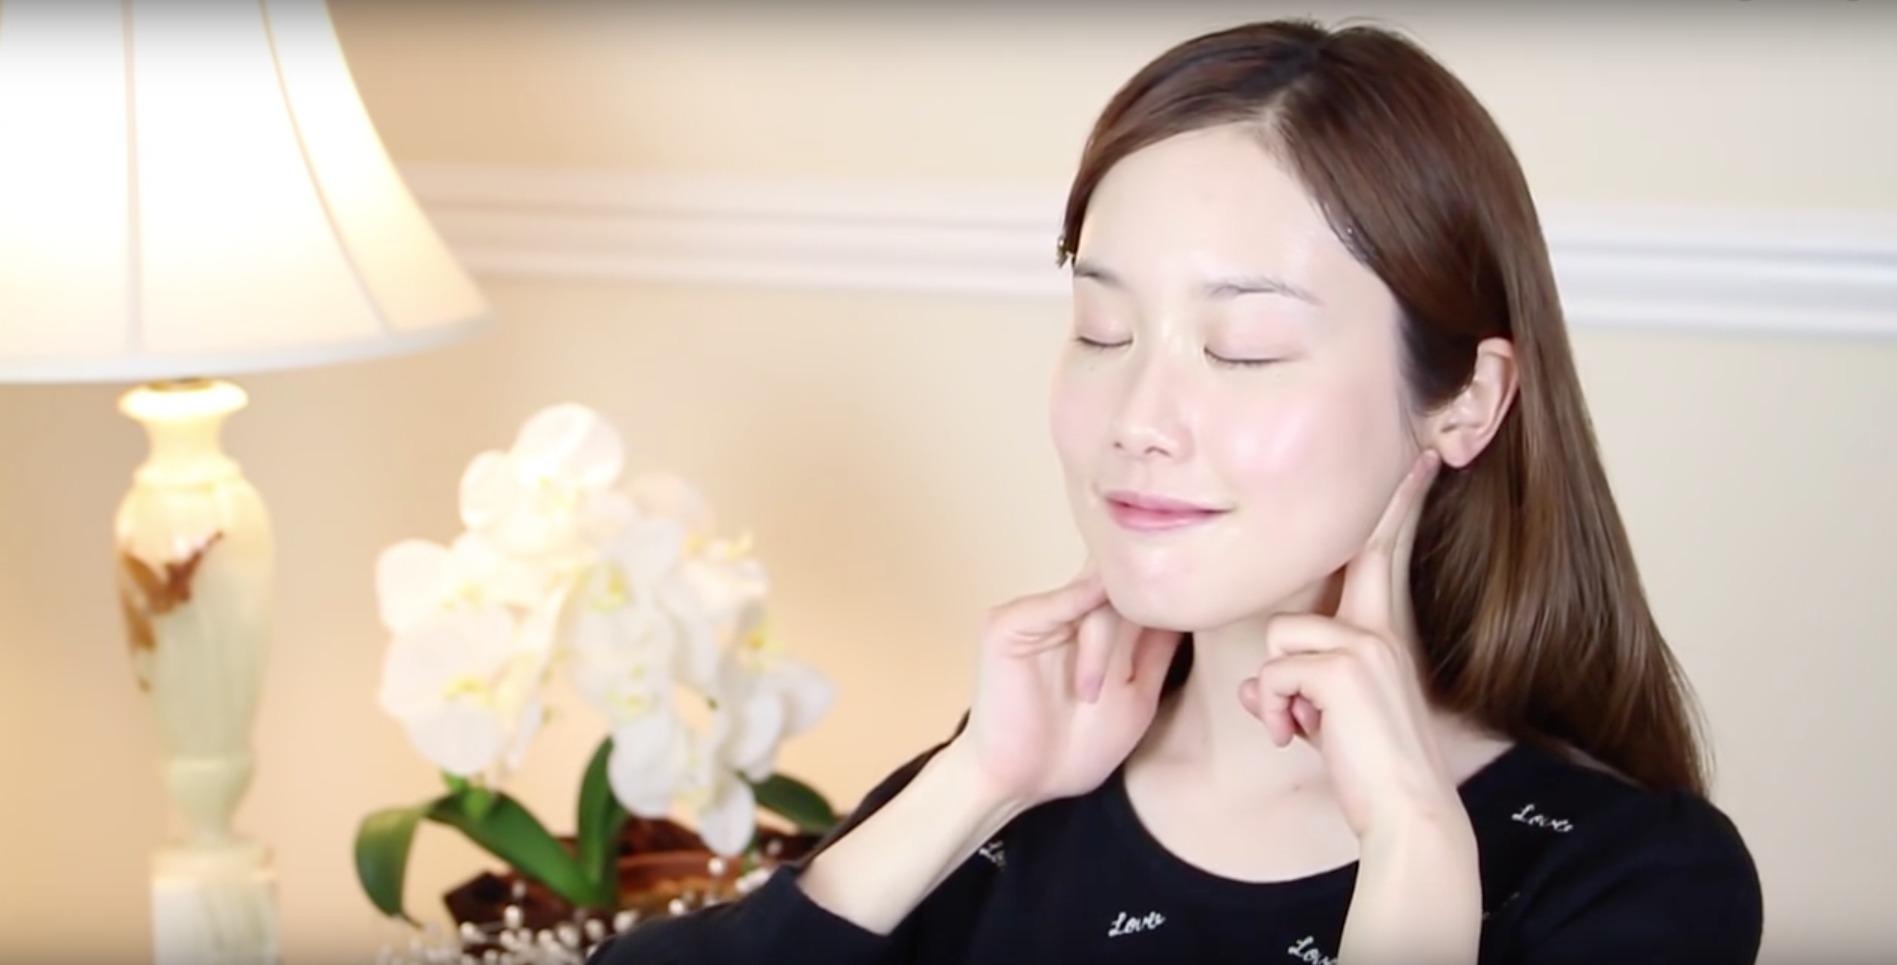 Ansiktsmassage kan framhäva konturerna kring kindben och käkben och göra ditt ansikte smalare. (Foto: Melodee Morita/How to  Get a Slimmer Face in 3 Minutes!)